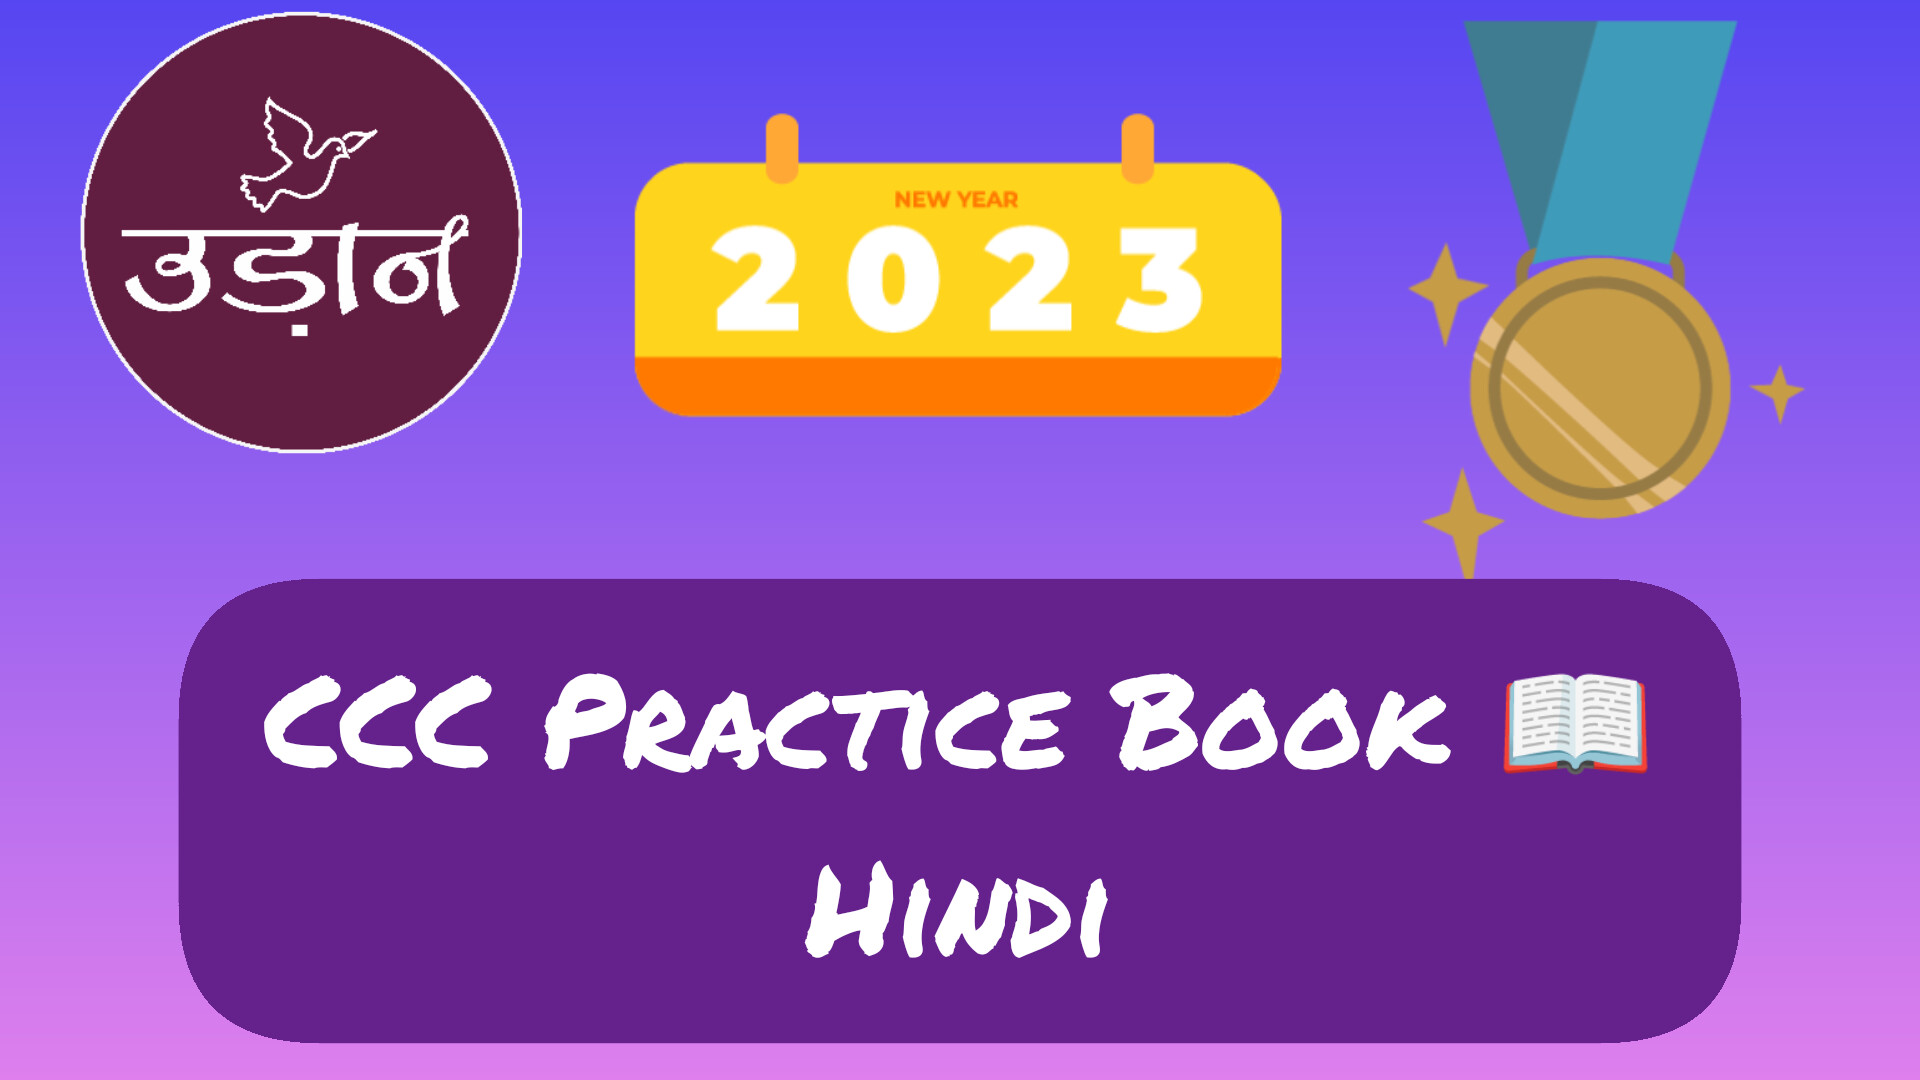 You are currently viewing CCC Practice Book in Hindi/ सीसीसी परीक्षा तैयारी की पुस्तक हिंदी में